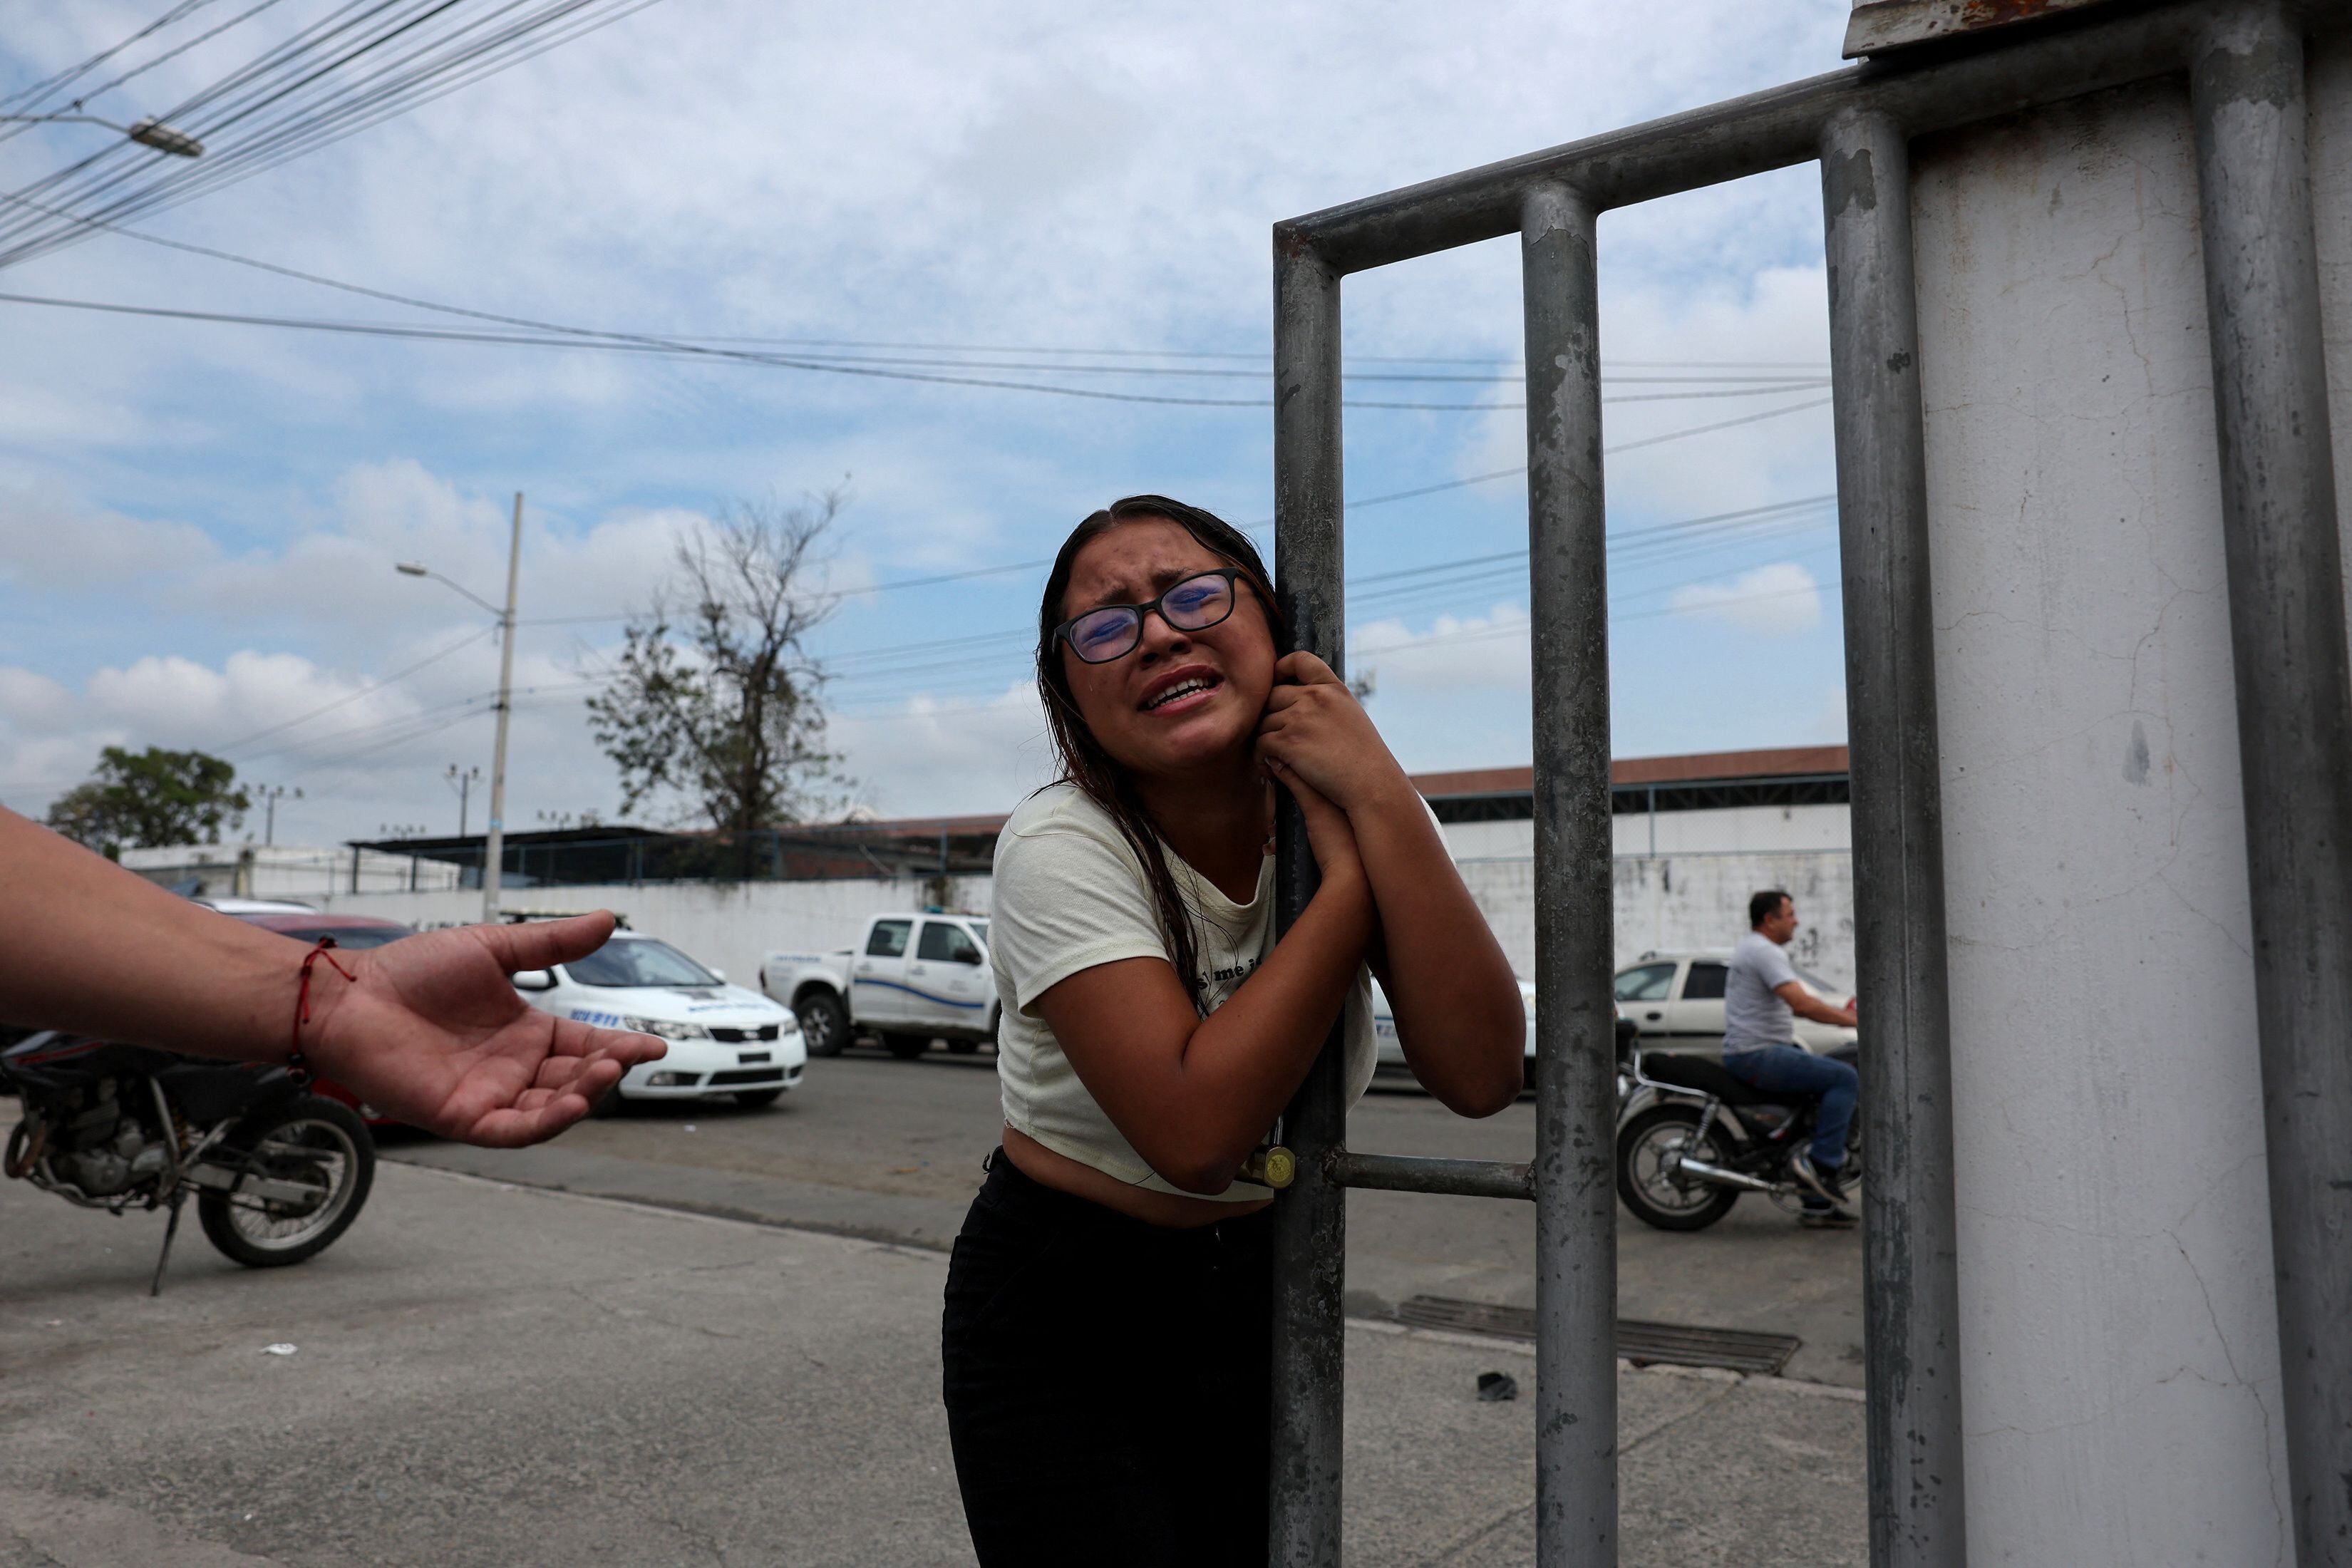 Una mujer llega a la estación de policía después de haber sido asaltada, el 12 de enero en Guayaquil.